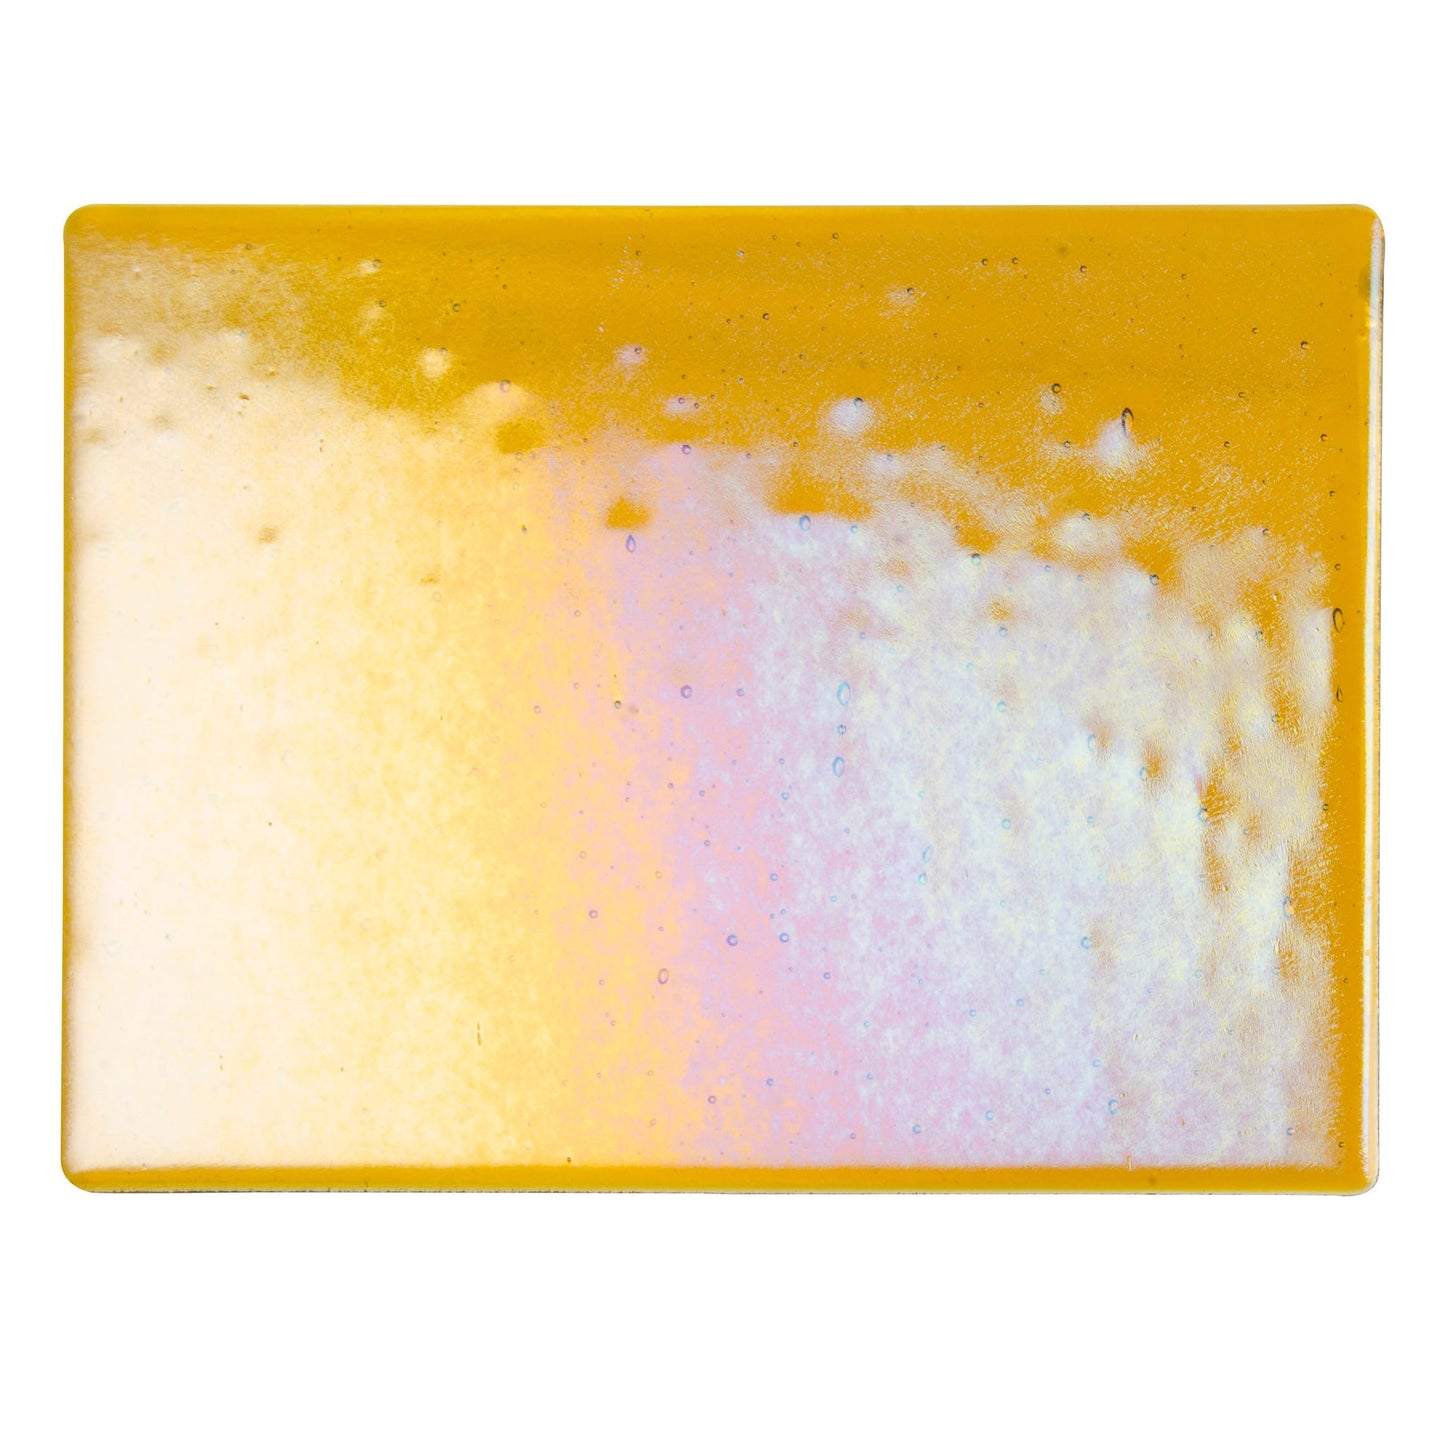 Bullseye COE90 Fusing Glass 001138 Dark Amber, Iridescent, Rainbow Full Sheet